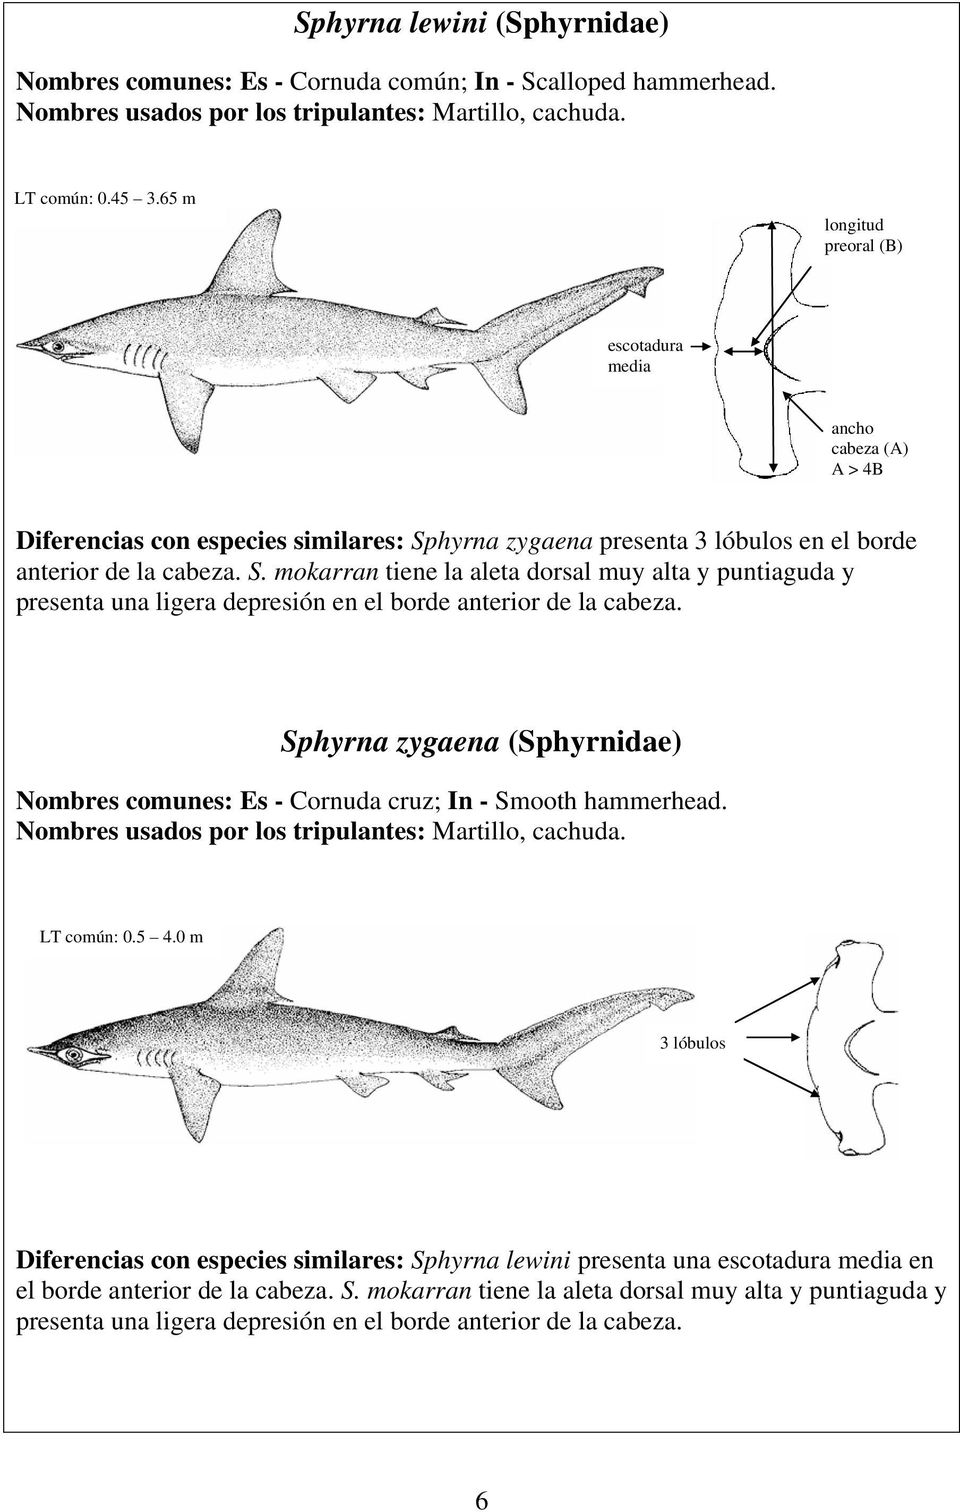 hyrna zygaena presenta 3 lóbulos en el borde anterior de la cabeza. S. mokarran tiene la aleta dorsal muy alta y puntiaguda y presenta una ligera depresión en el borde anterior de la cabeza.